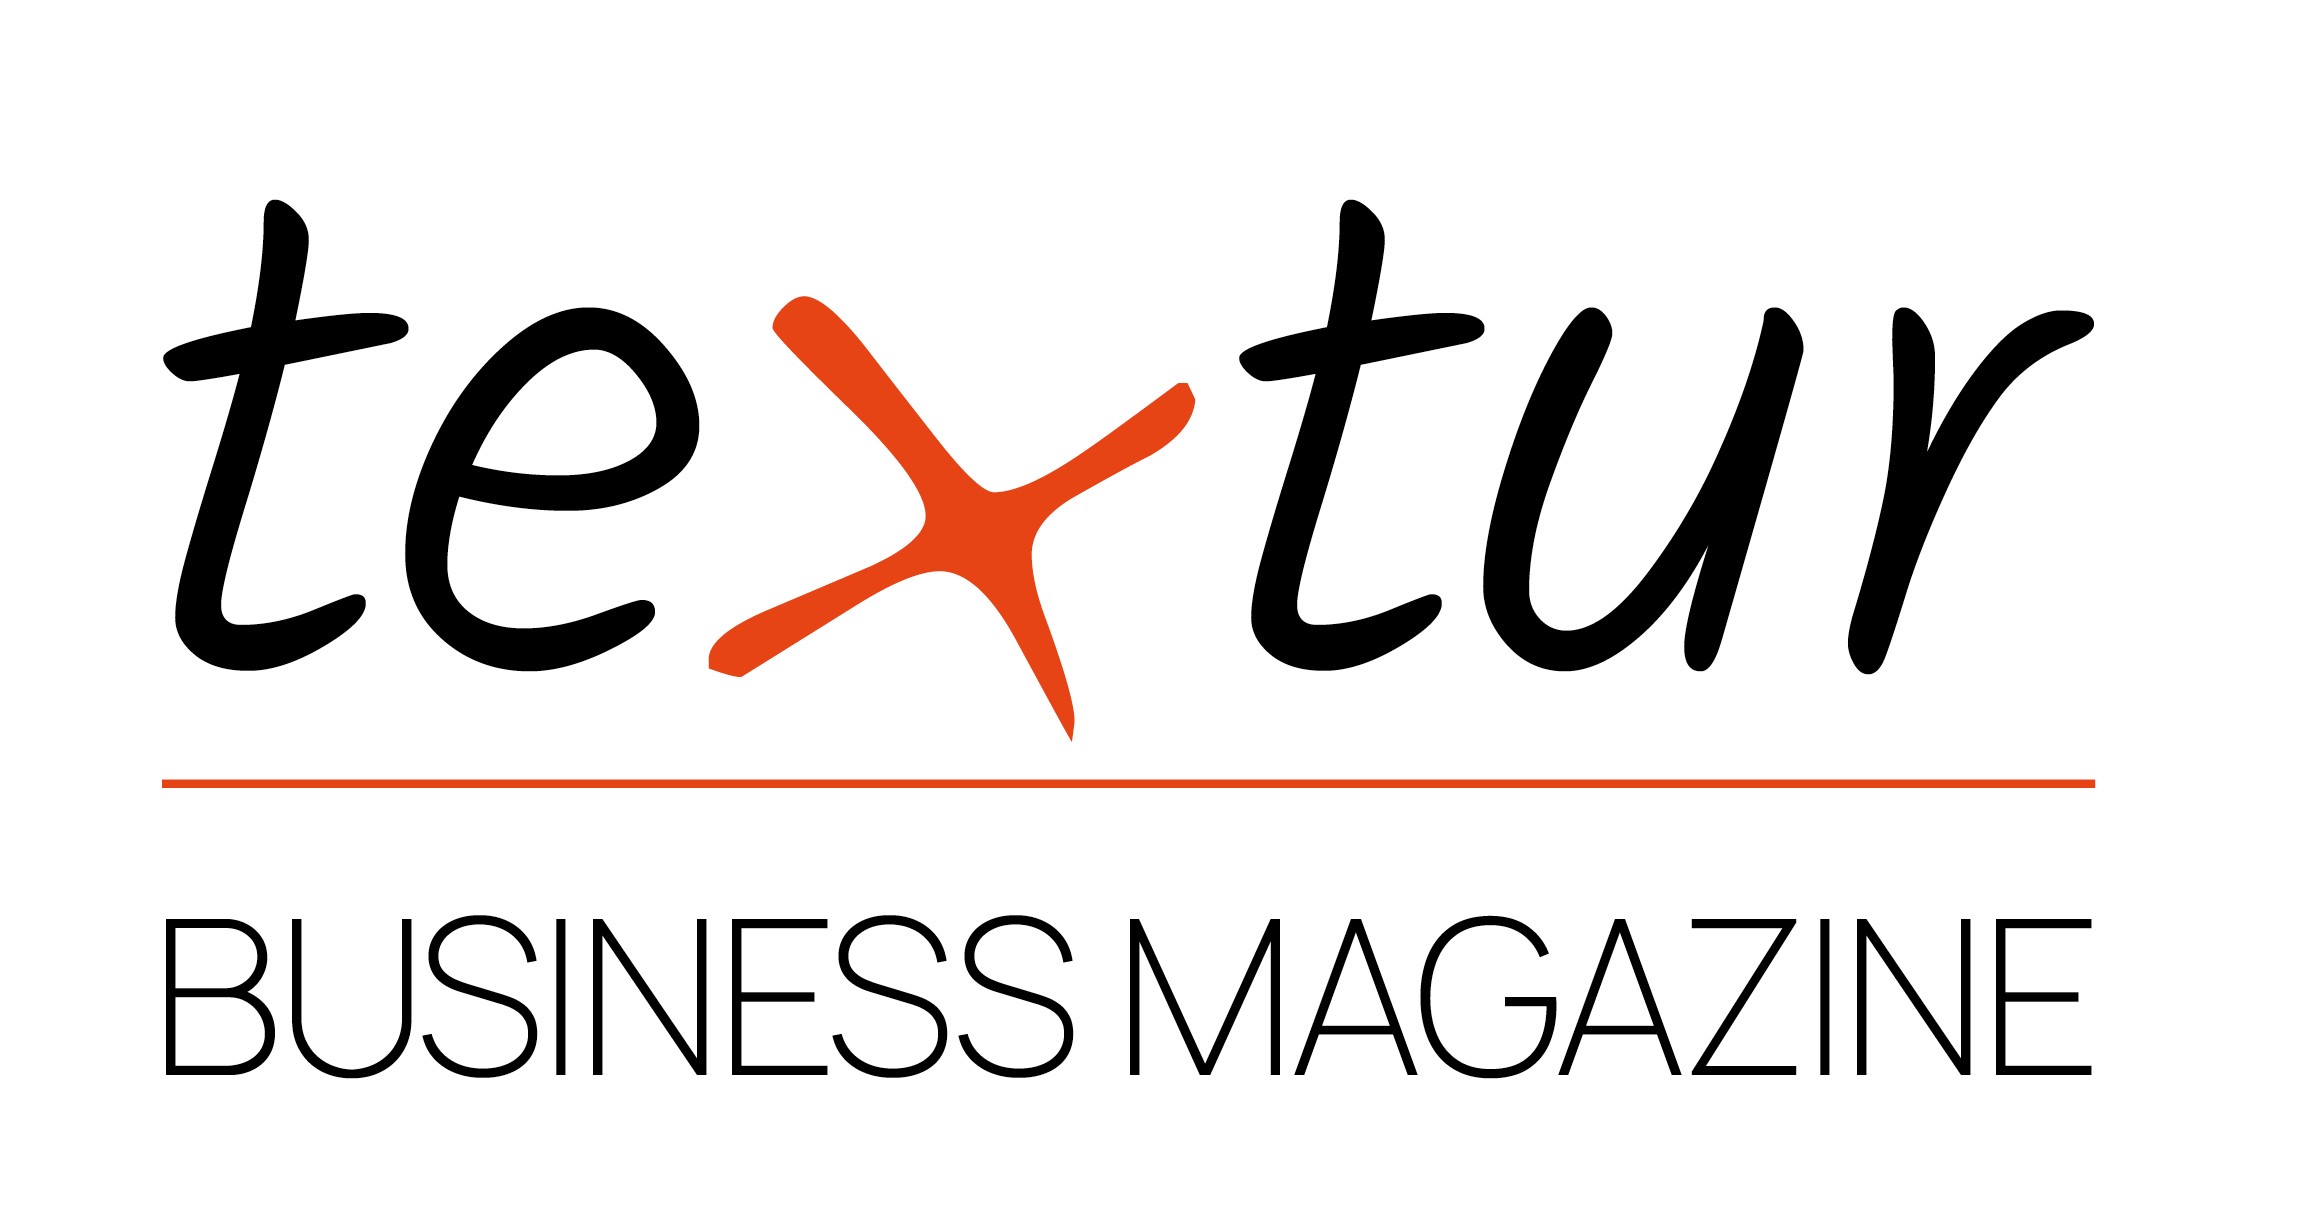 Business Magazine von textur